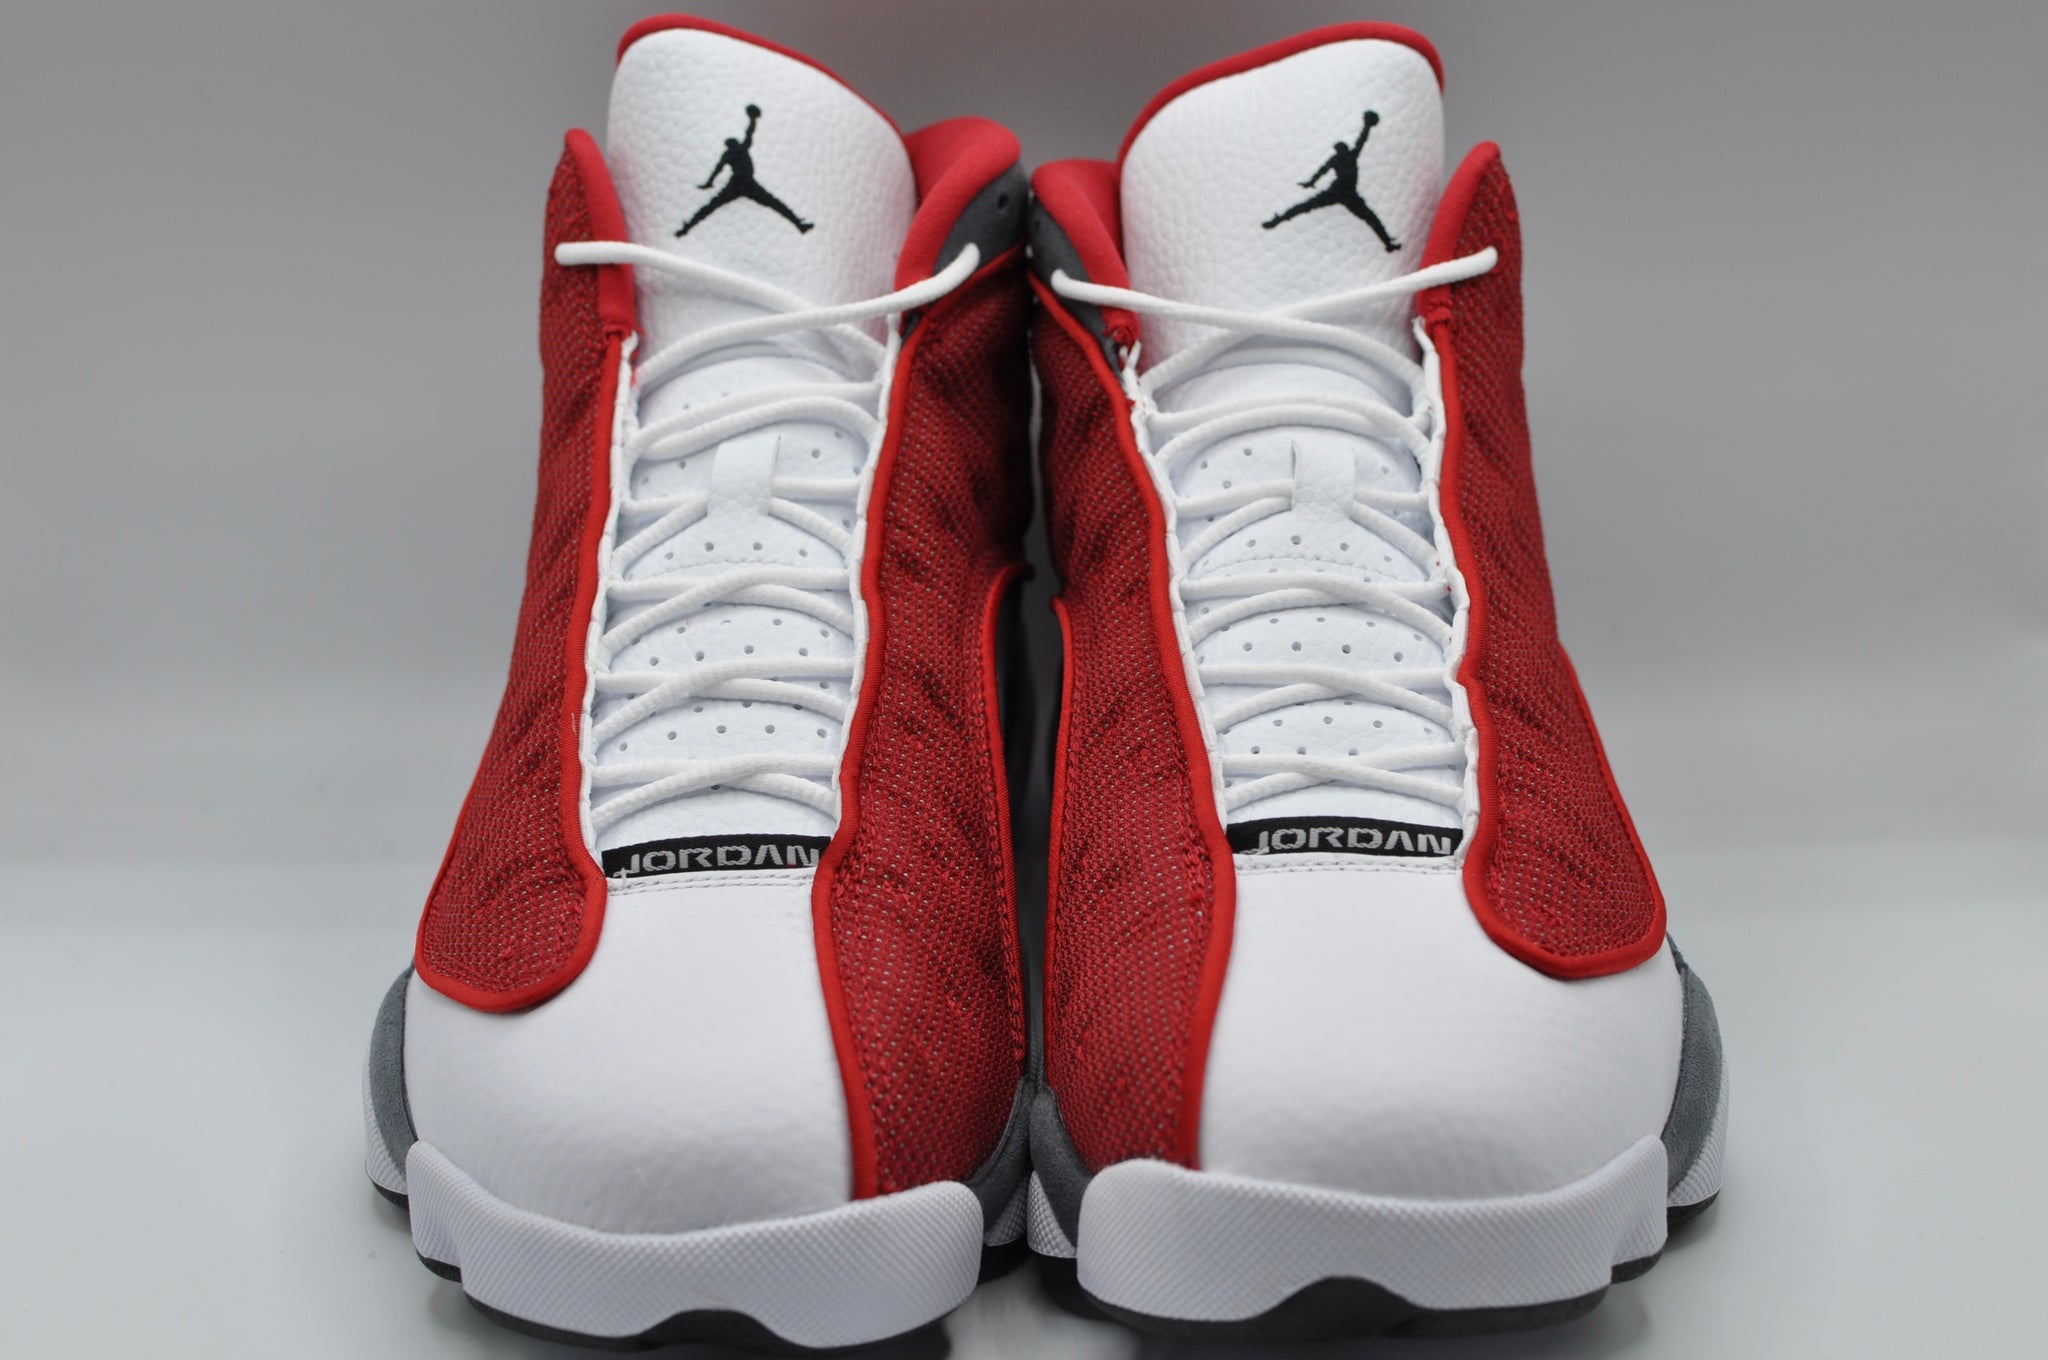 Nike Air Jordan 13 Retro Gym Sneaker